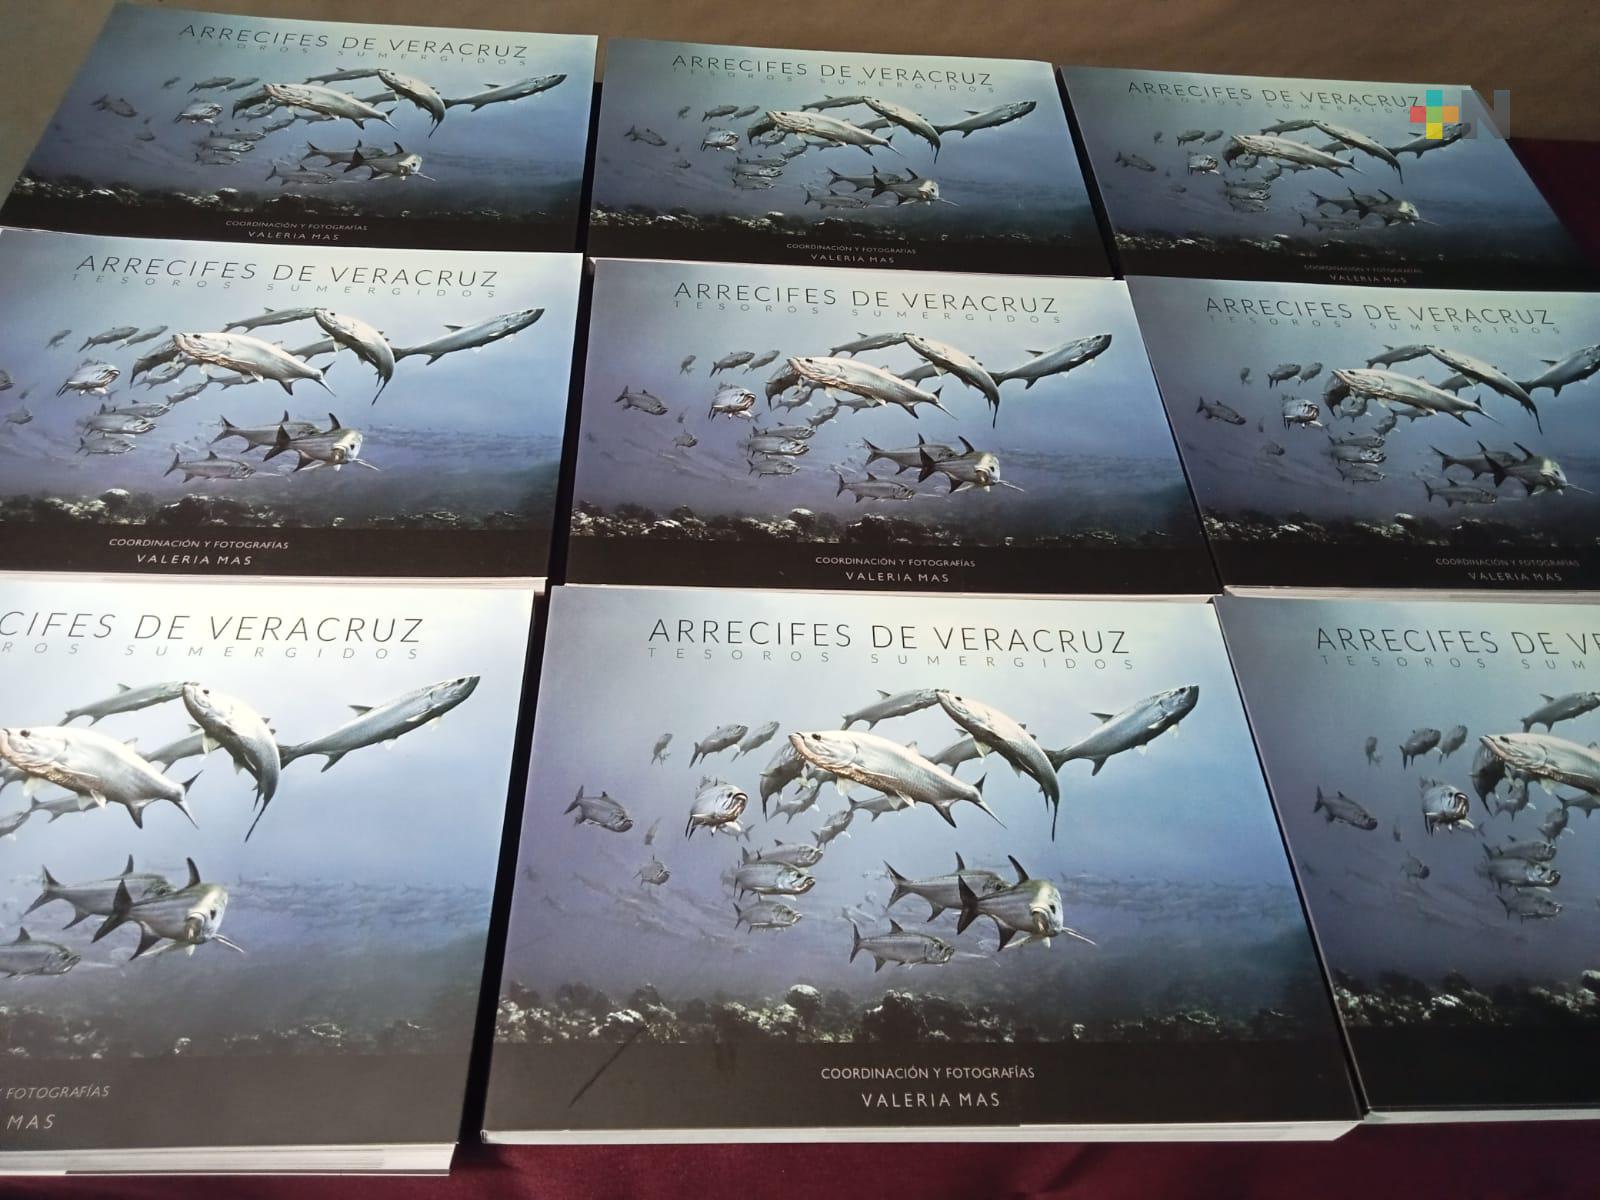 Presentan el libro «Arrecifes de Veracruz, Tesoros Sumergidos» de Valeria Mas